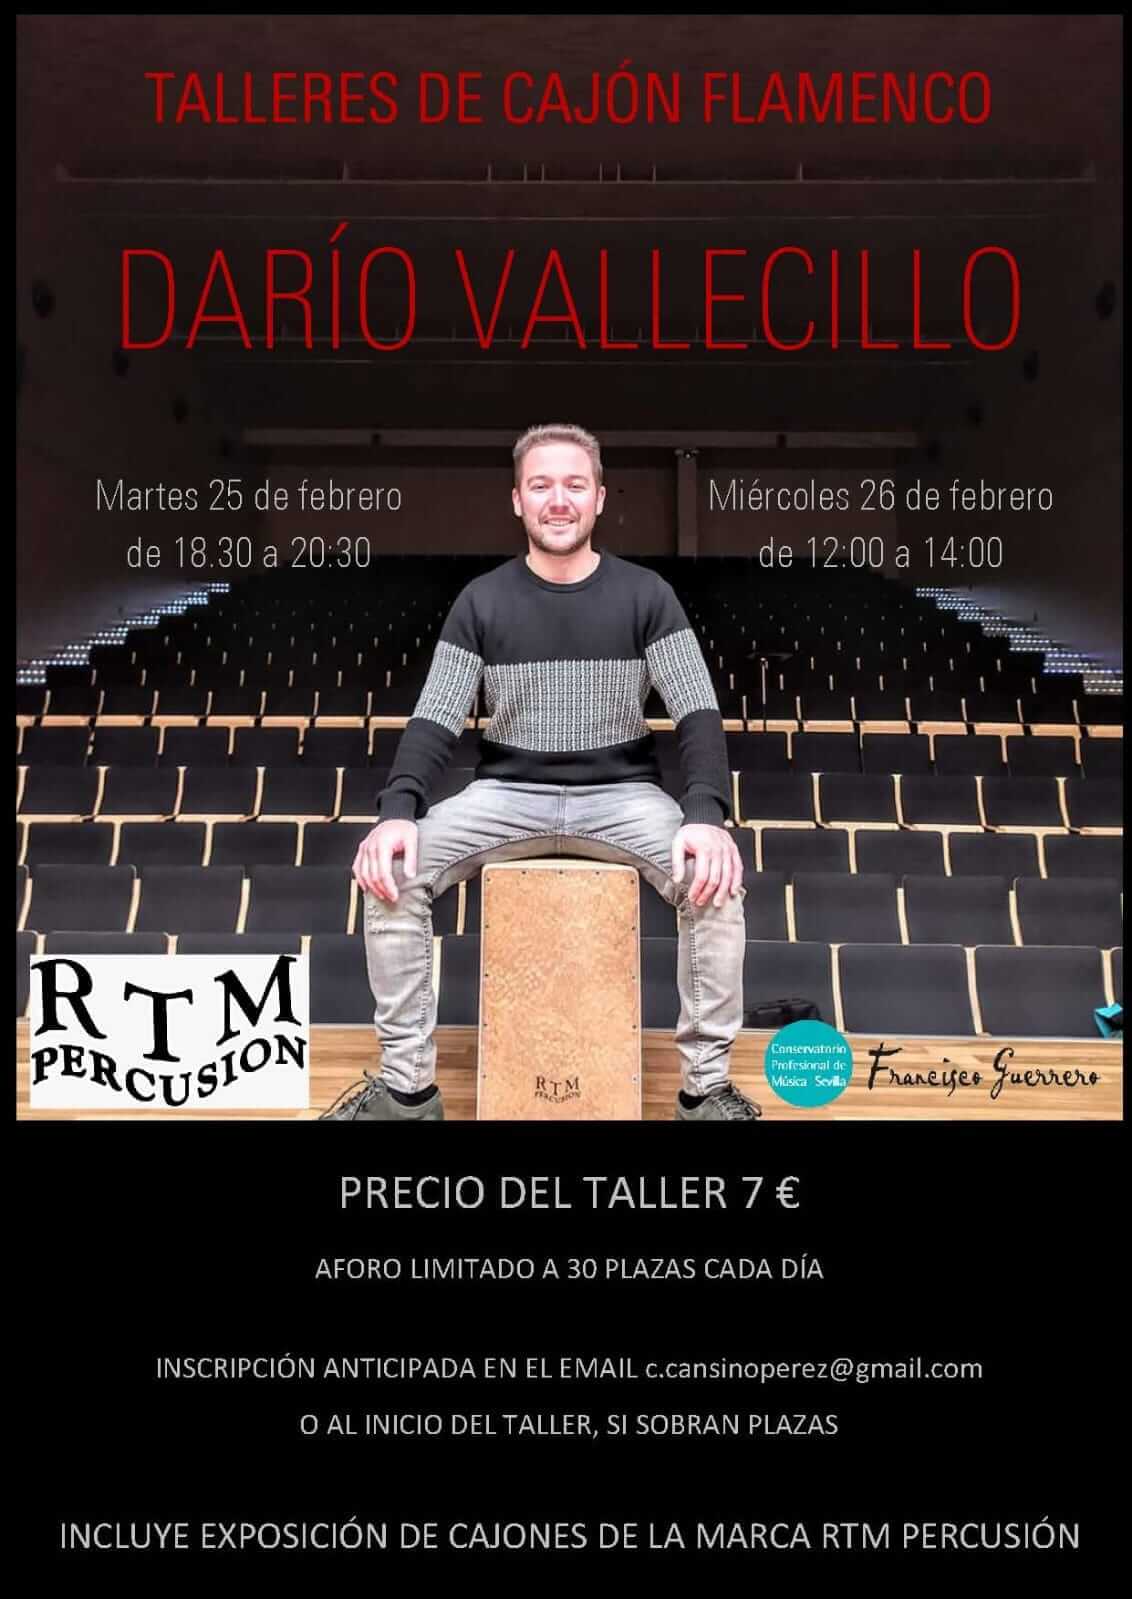 El utrerano Darío Vallecillo impartirá dos talleres de percusión y cajón flamenco en el CPM Francisco Guerrero